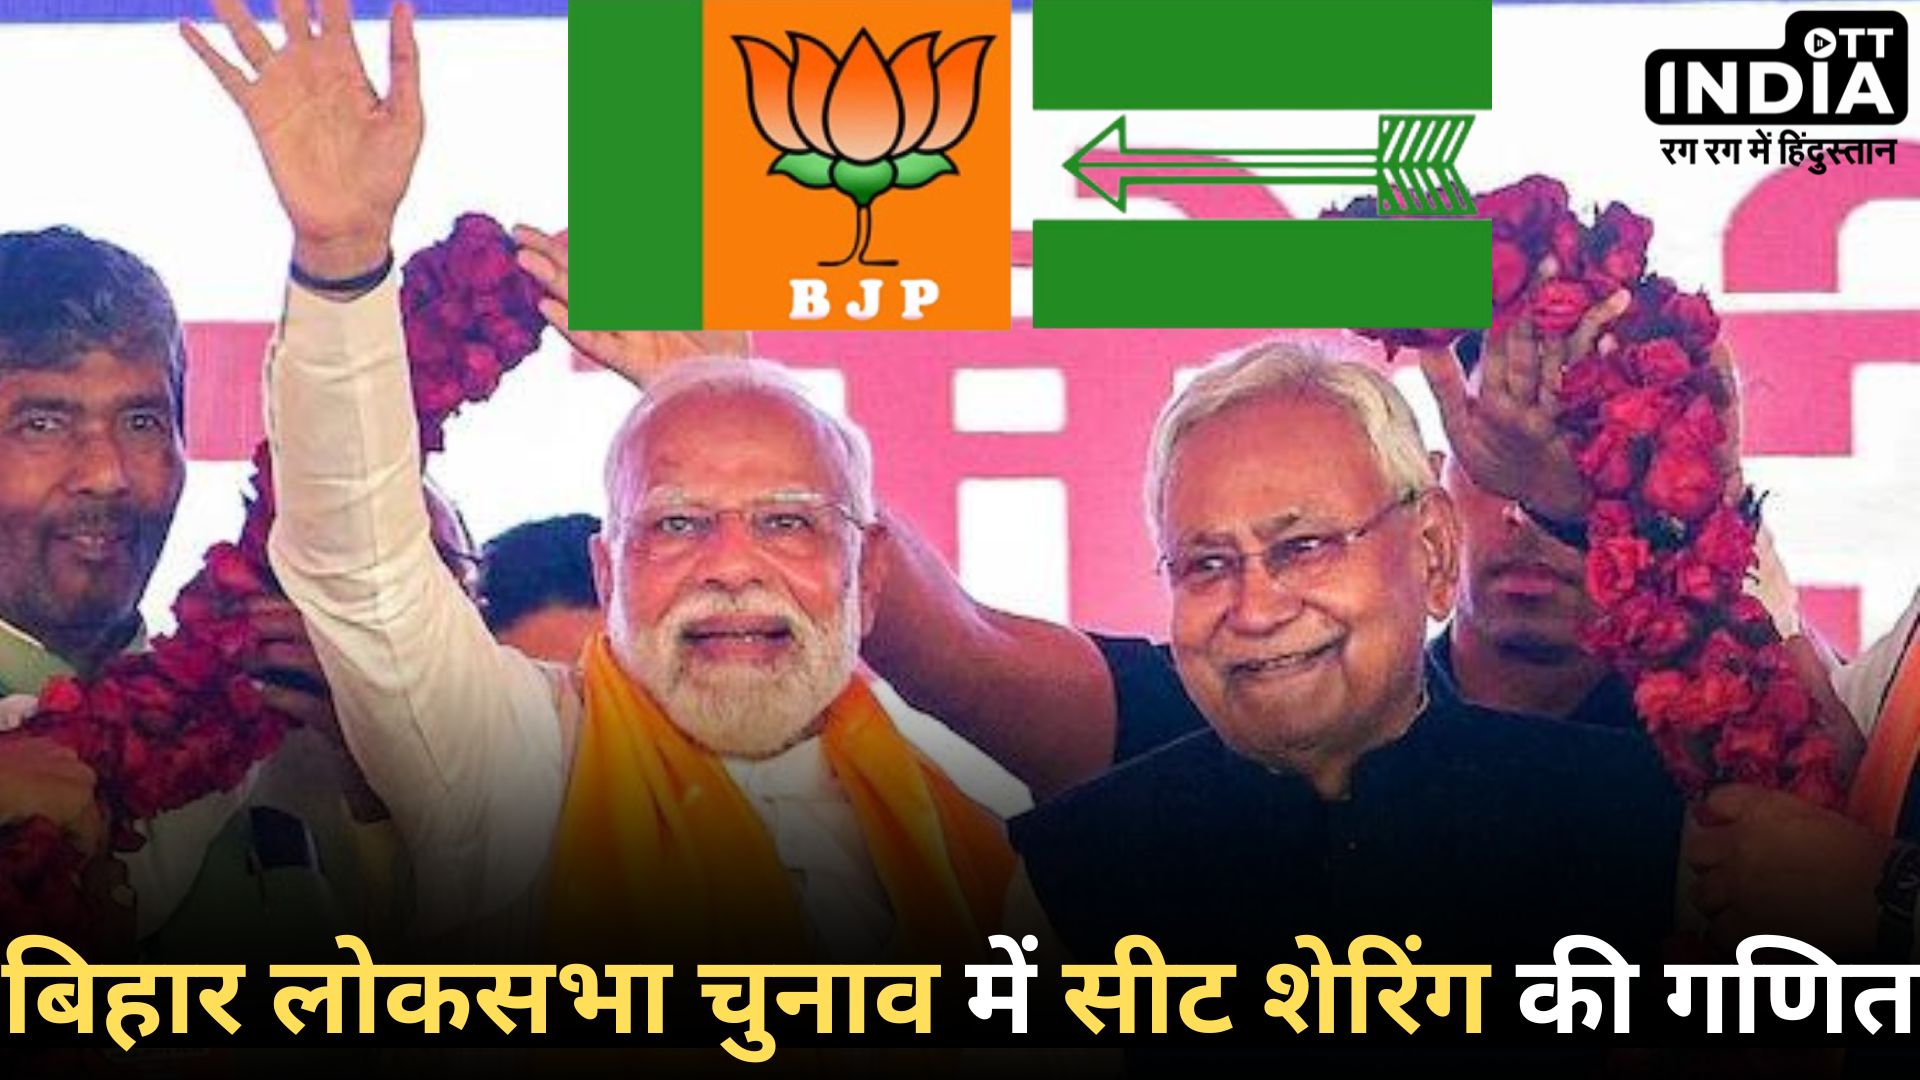 BIHAR BJP – JDU: NDA में सीट शेयरिंग में चाचा पर भारी पड़ा भतीजा!, चिराग पासवान को मिली 5 सीट